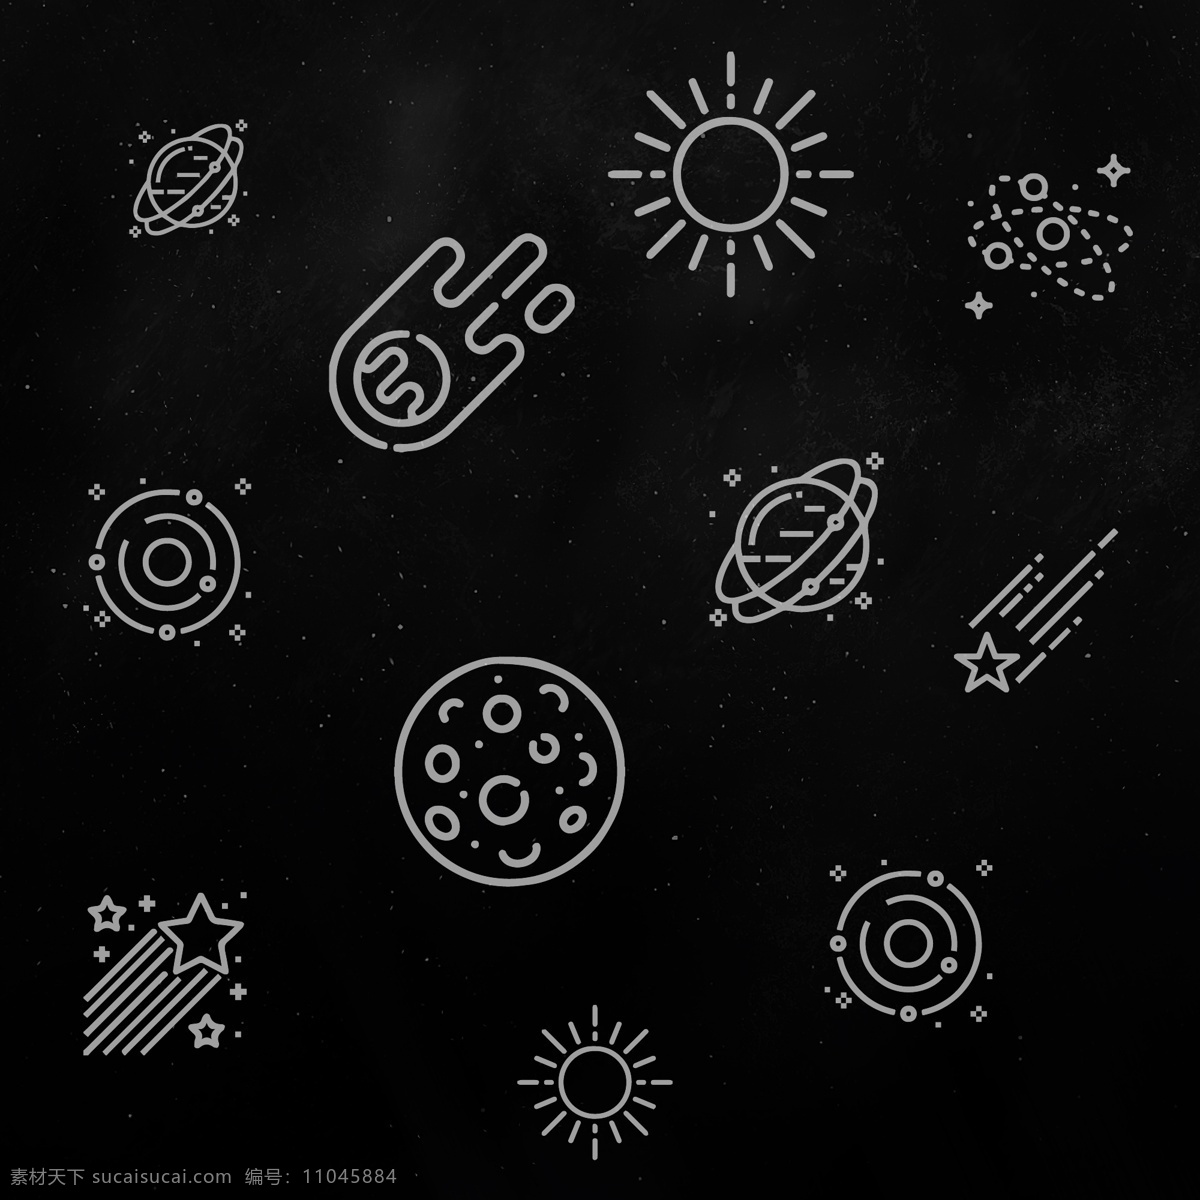 星际图标设计 星星图标 星空图标 星际图标 飞行器图标 天文元素 星球 星云 太阳 星星 星际元素 logo设计 图标设计 宇宙太空 标志图标 其他图标